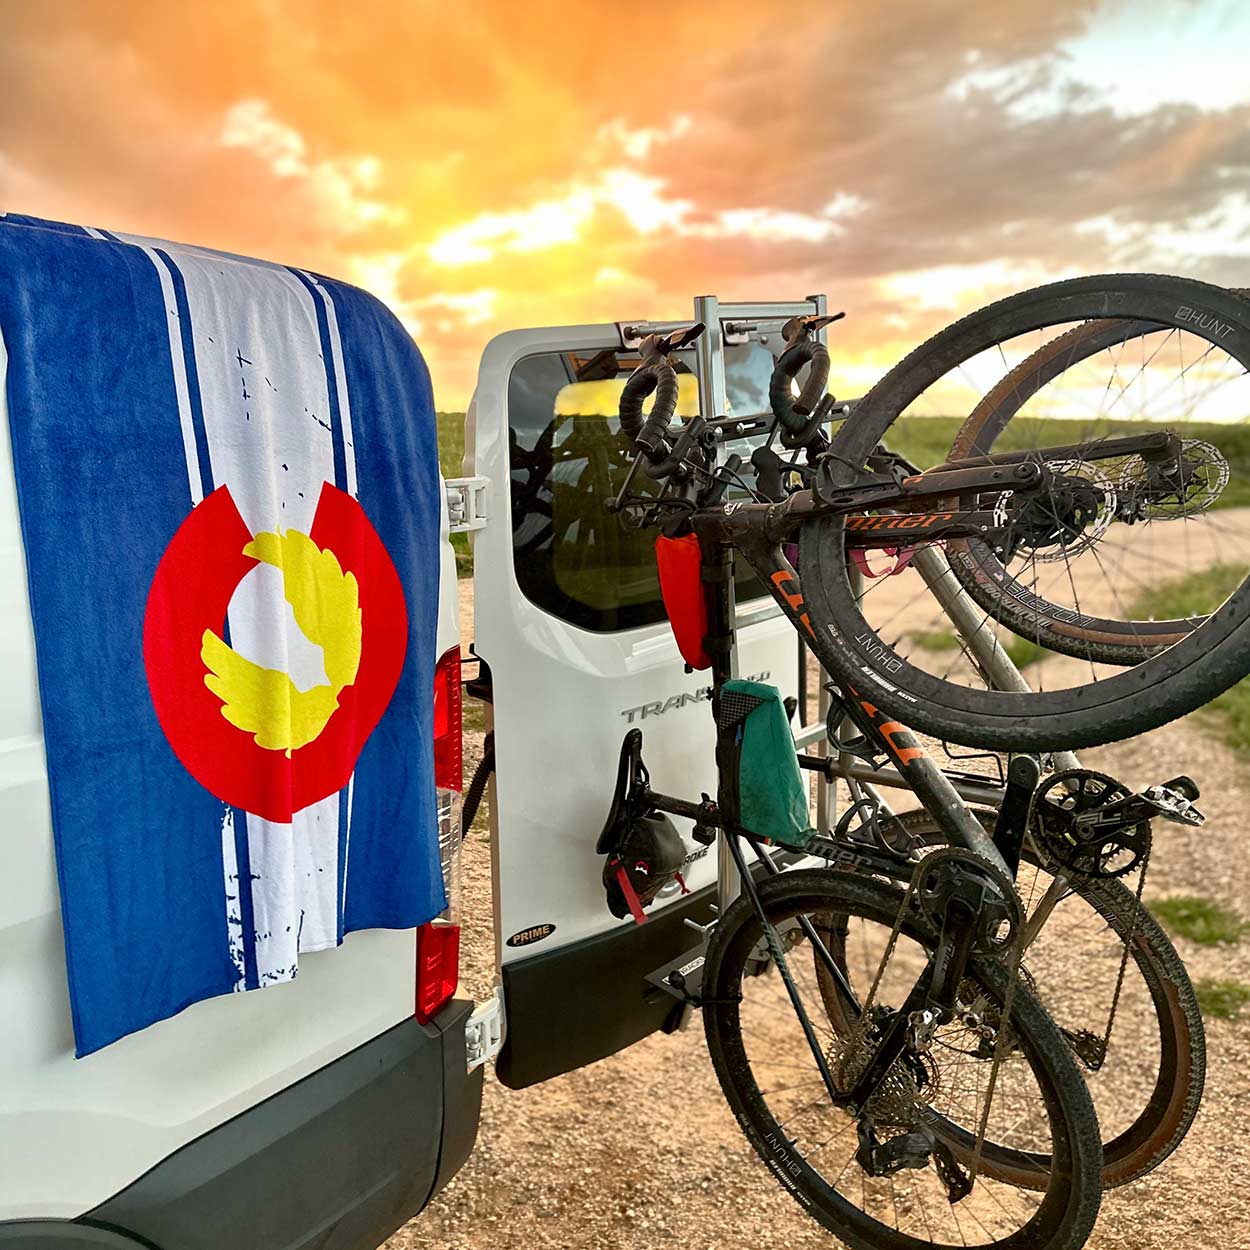 Beach Towel: Colorado Flag